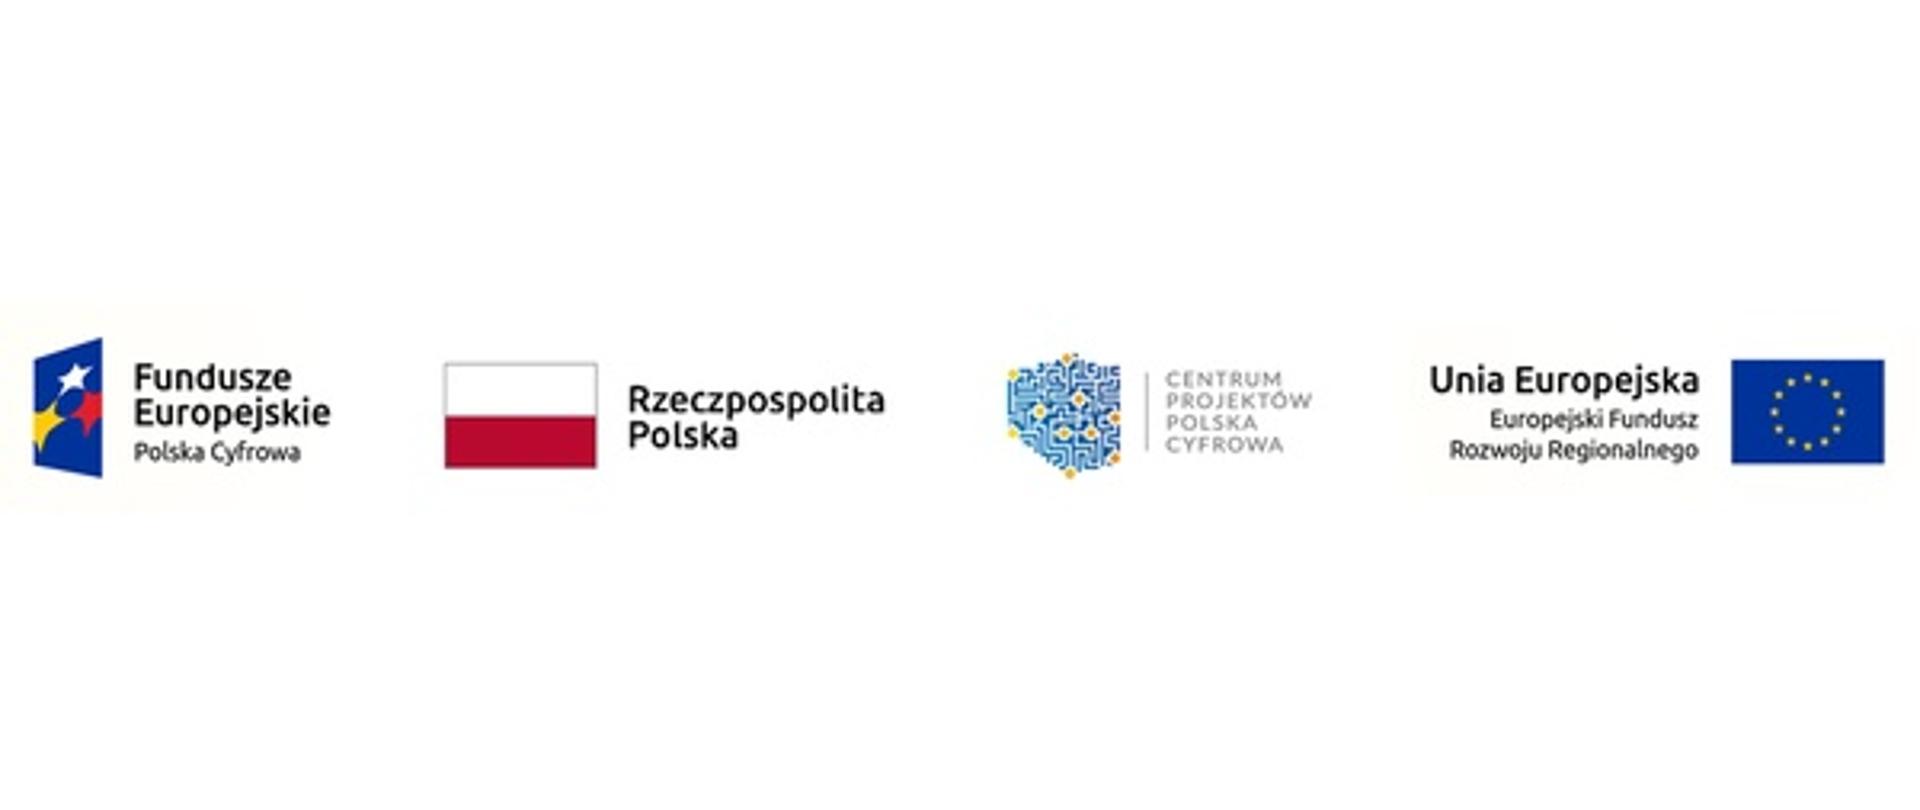 Logotypy: Fundusze Europejskie, Rzeczpospolita Polska, Centrum Projektów Polska Cyfrowa, Europejski Fundusz Rozwoju Regionalnego